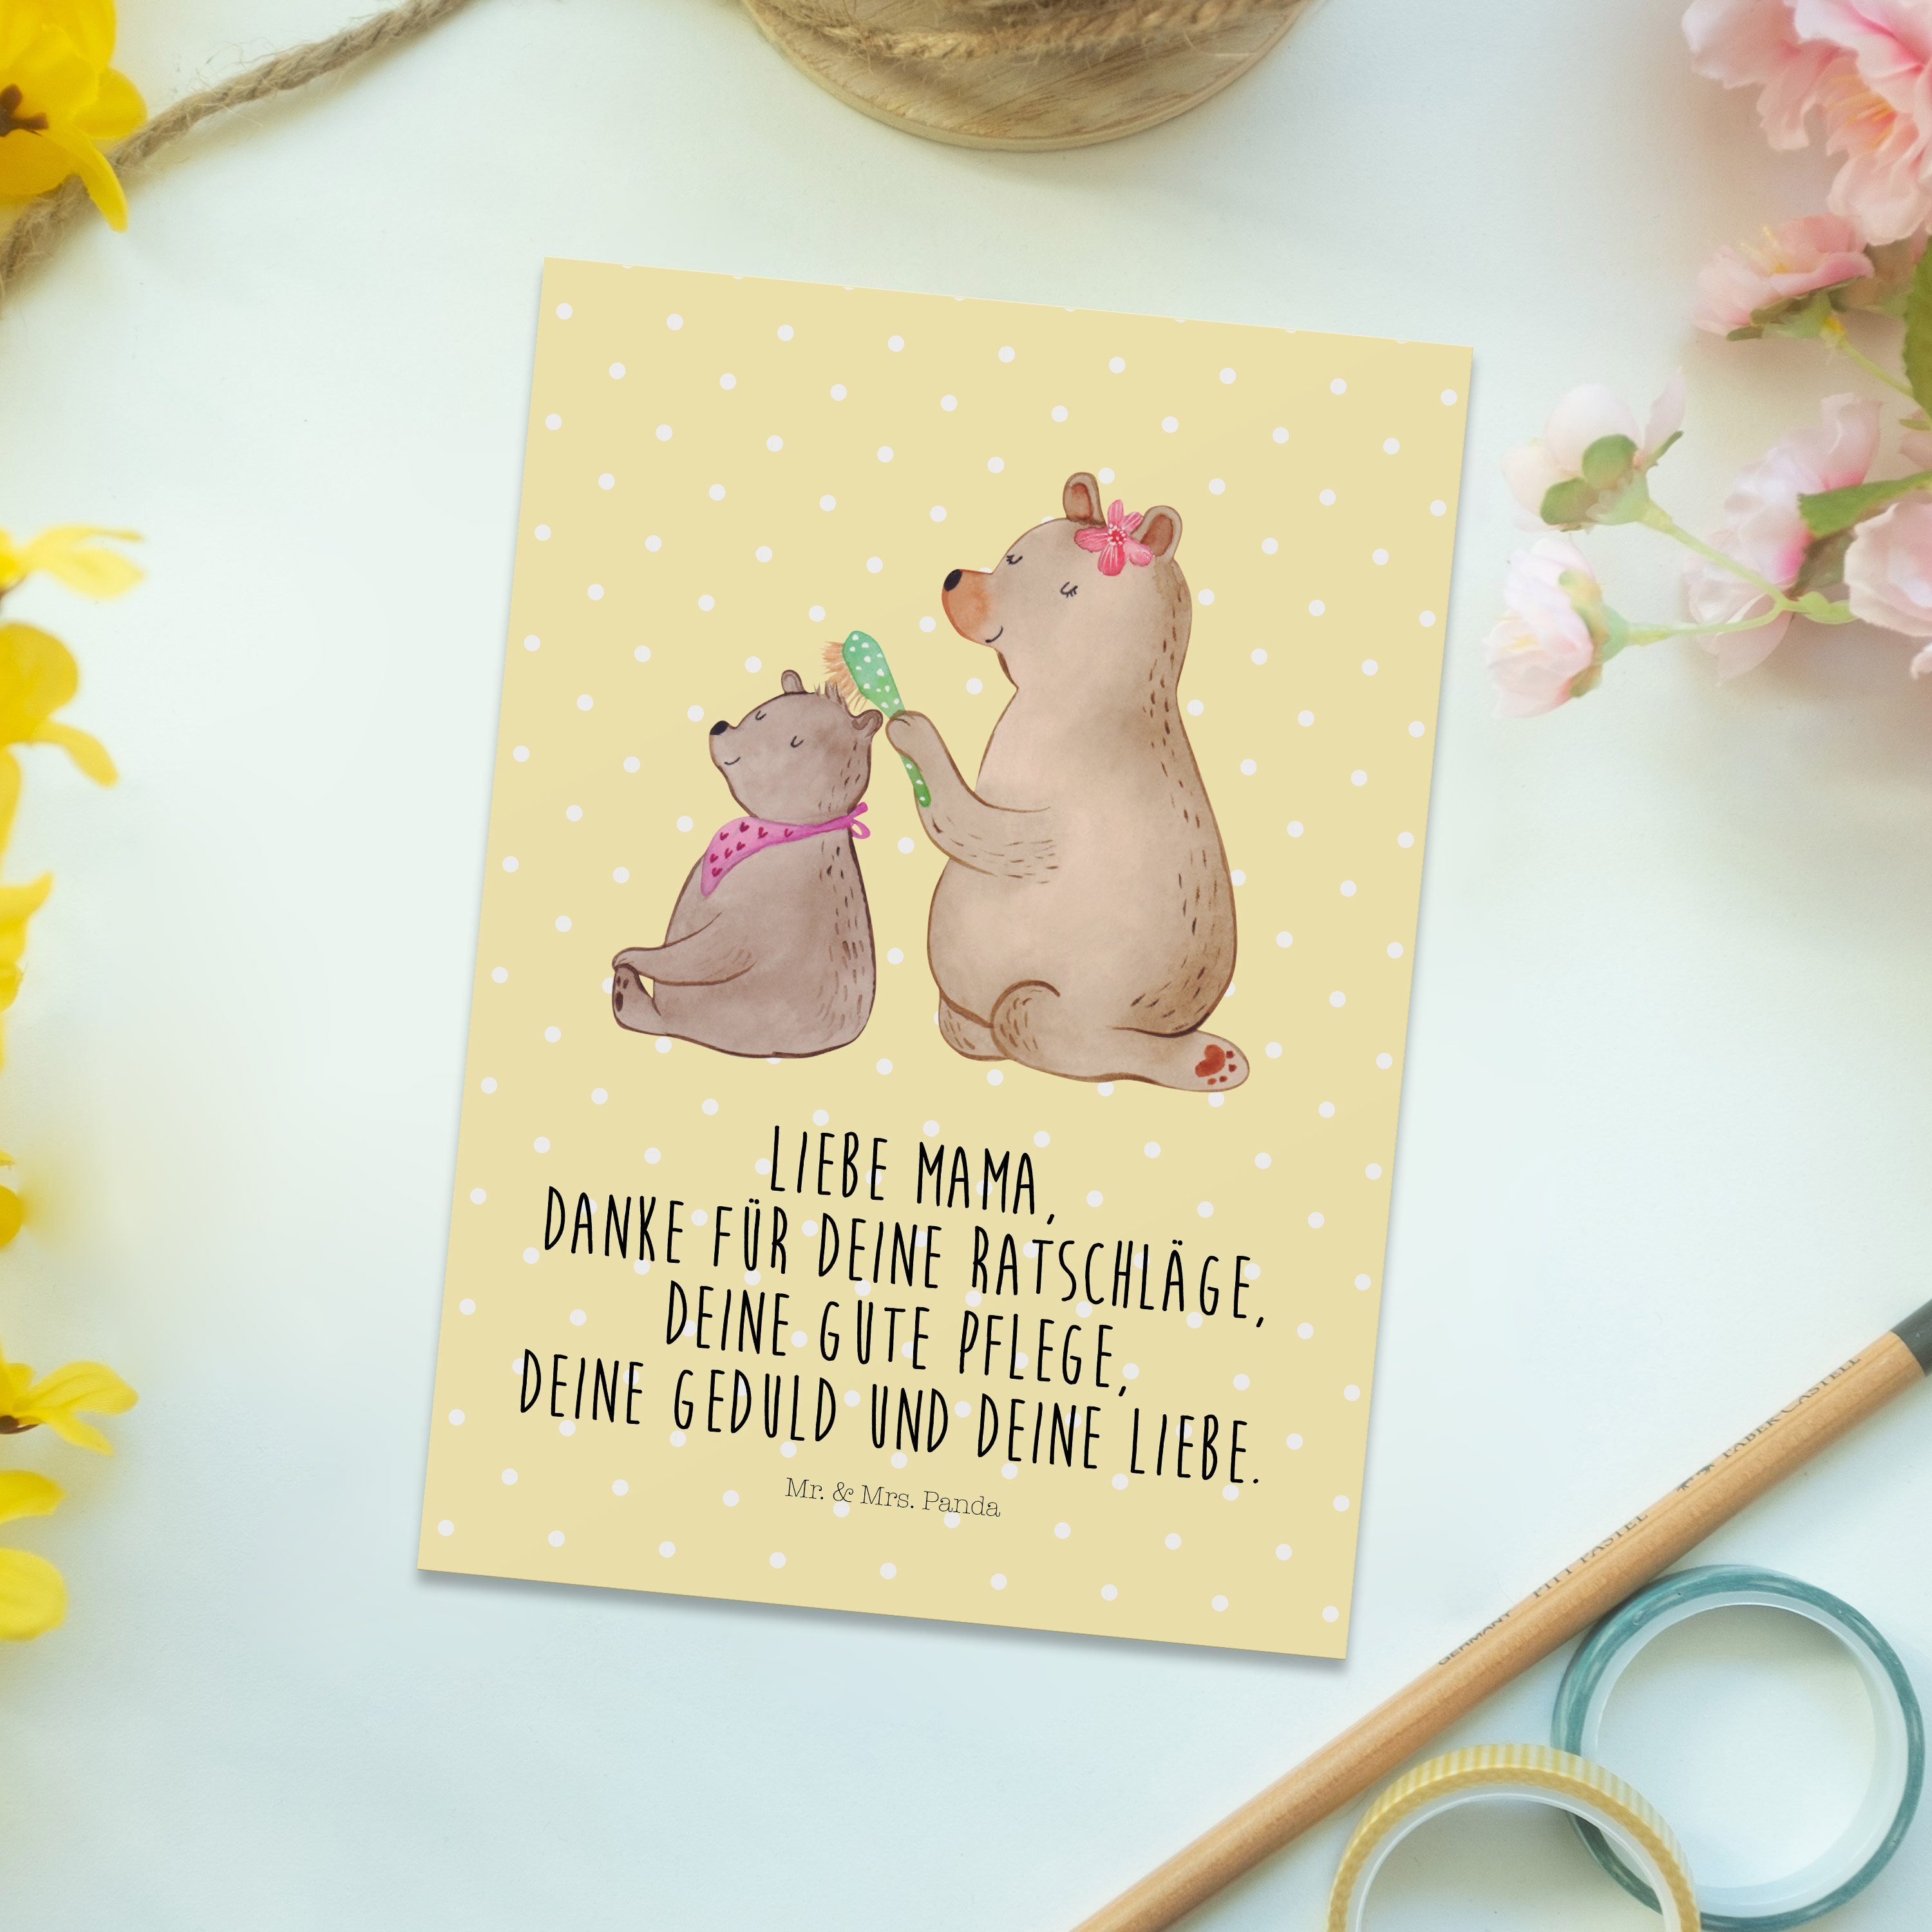 Mr. & Mrs. mit - Panda Gelb Kind Geschenk, Muttertag, Pastell Bär Einladun Postkarte Vatertag, 